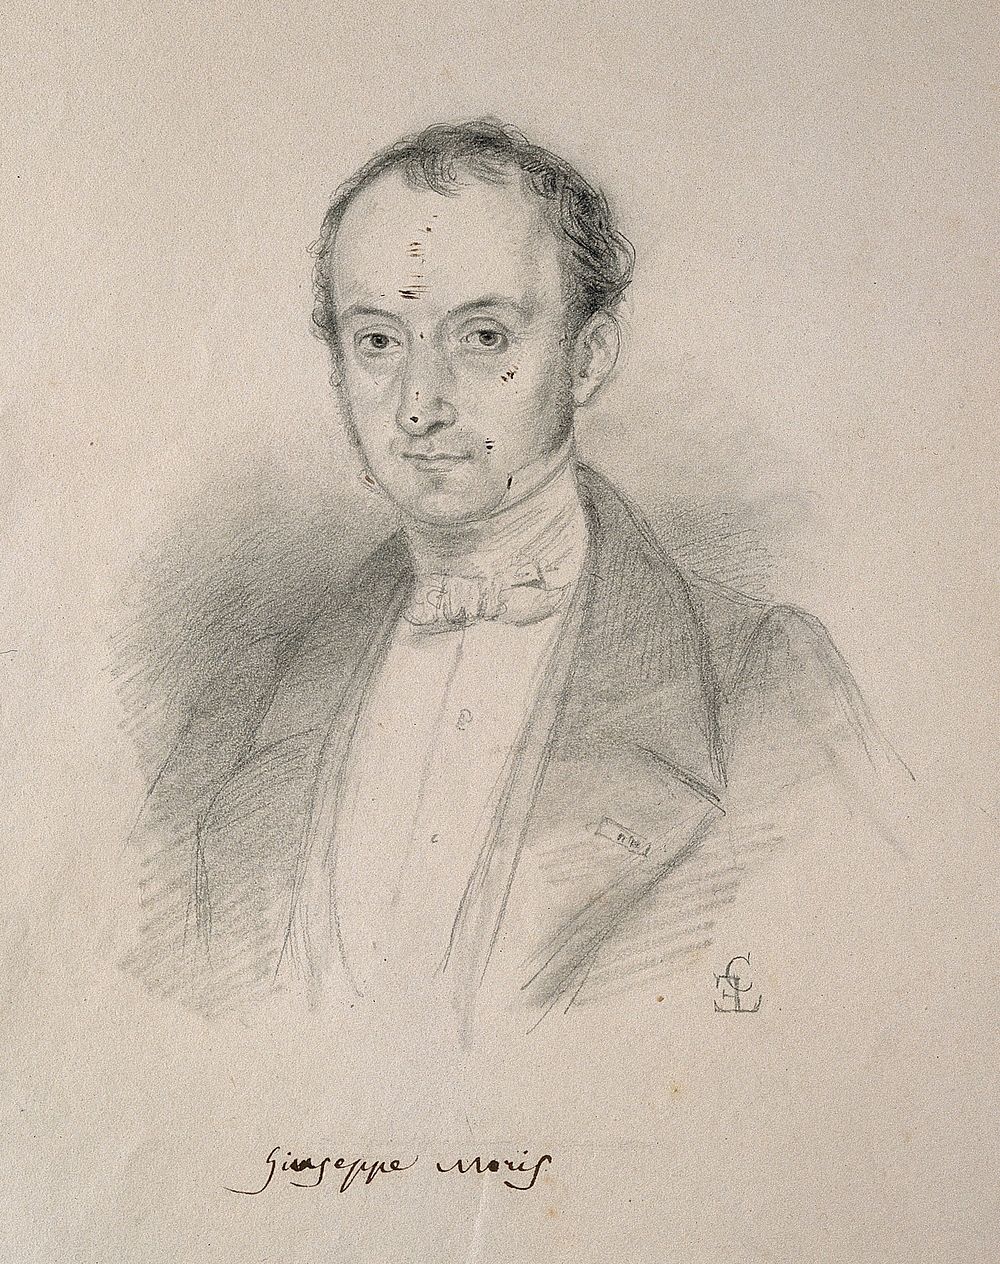 Giuseppe Giacinto Moris. Pencil drawing by C. E. Liverati, 1841.